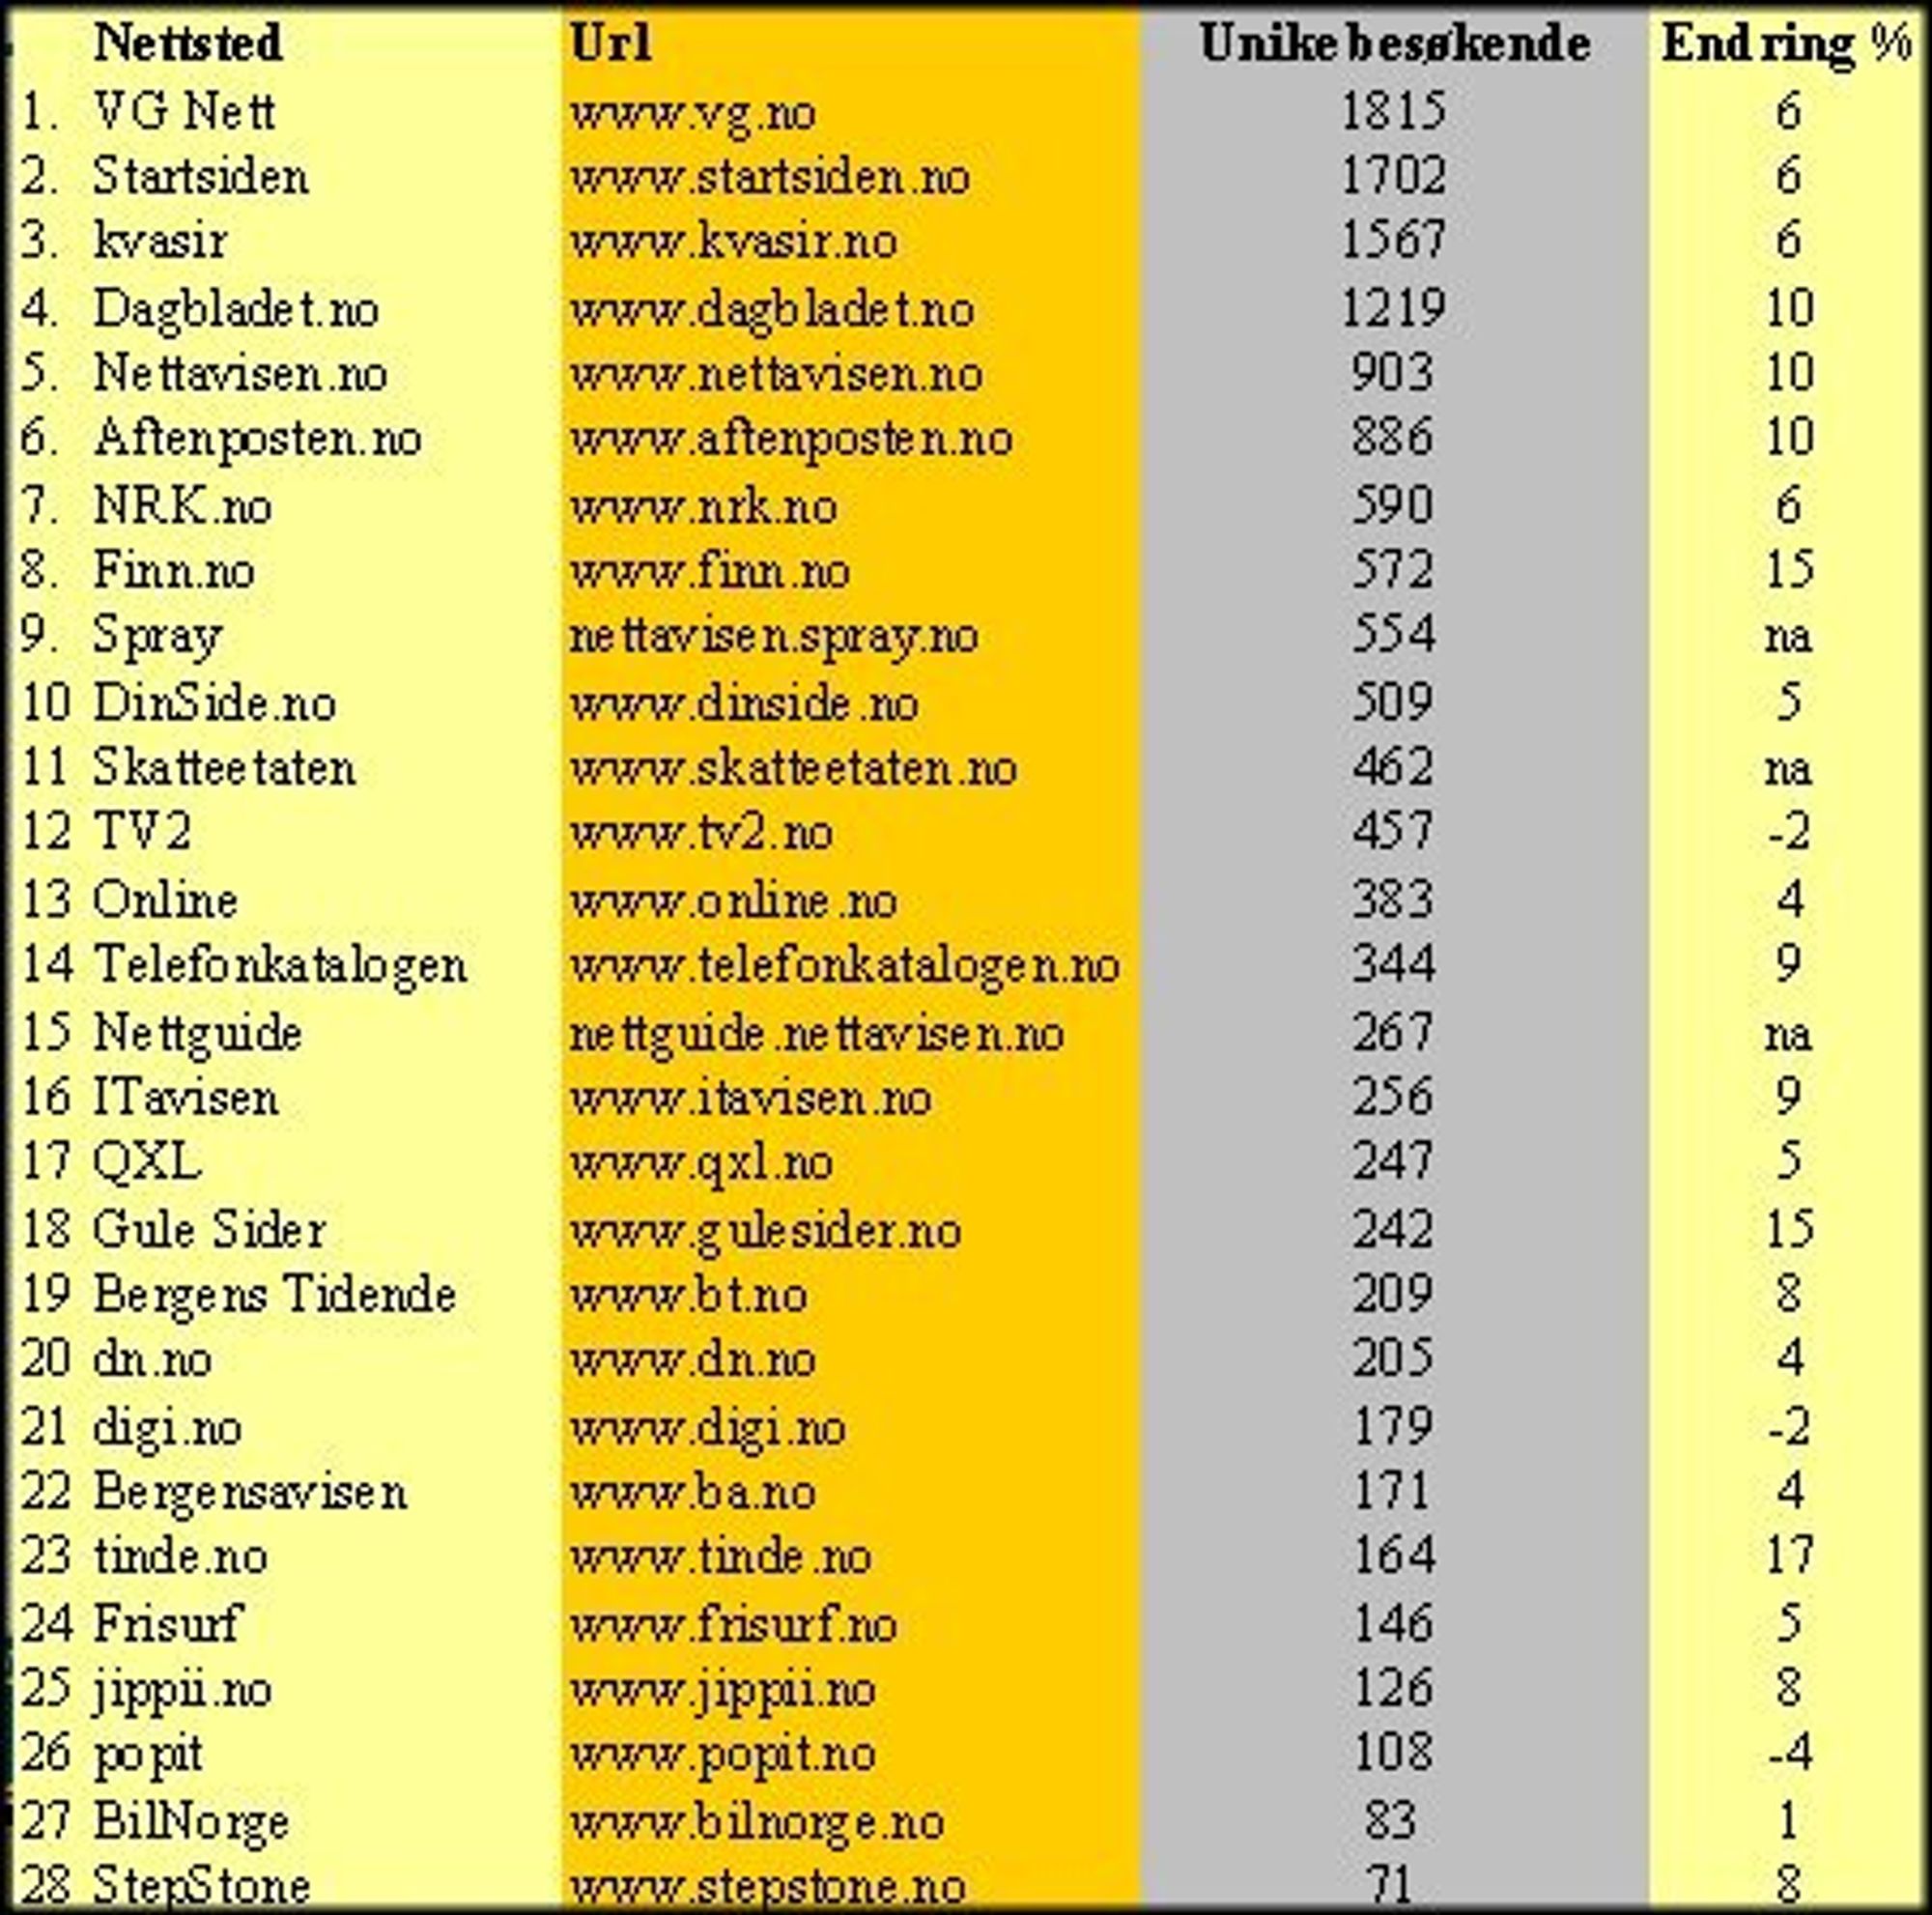 Nøkkeltall, webmeasure april 2002, rene nettsteder (unike besøkende - tall i tusen)